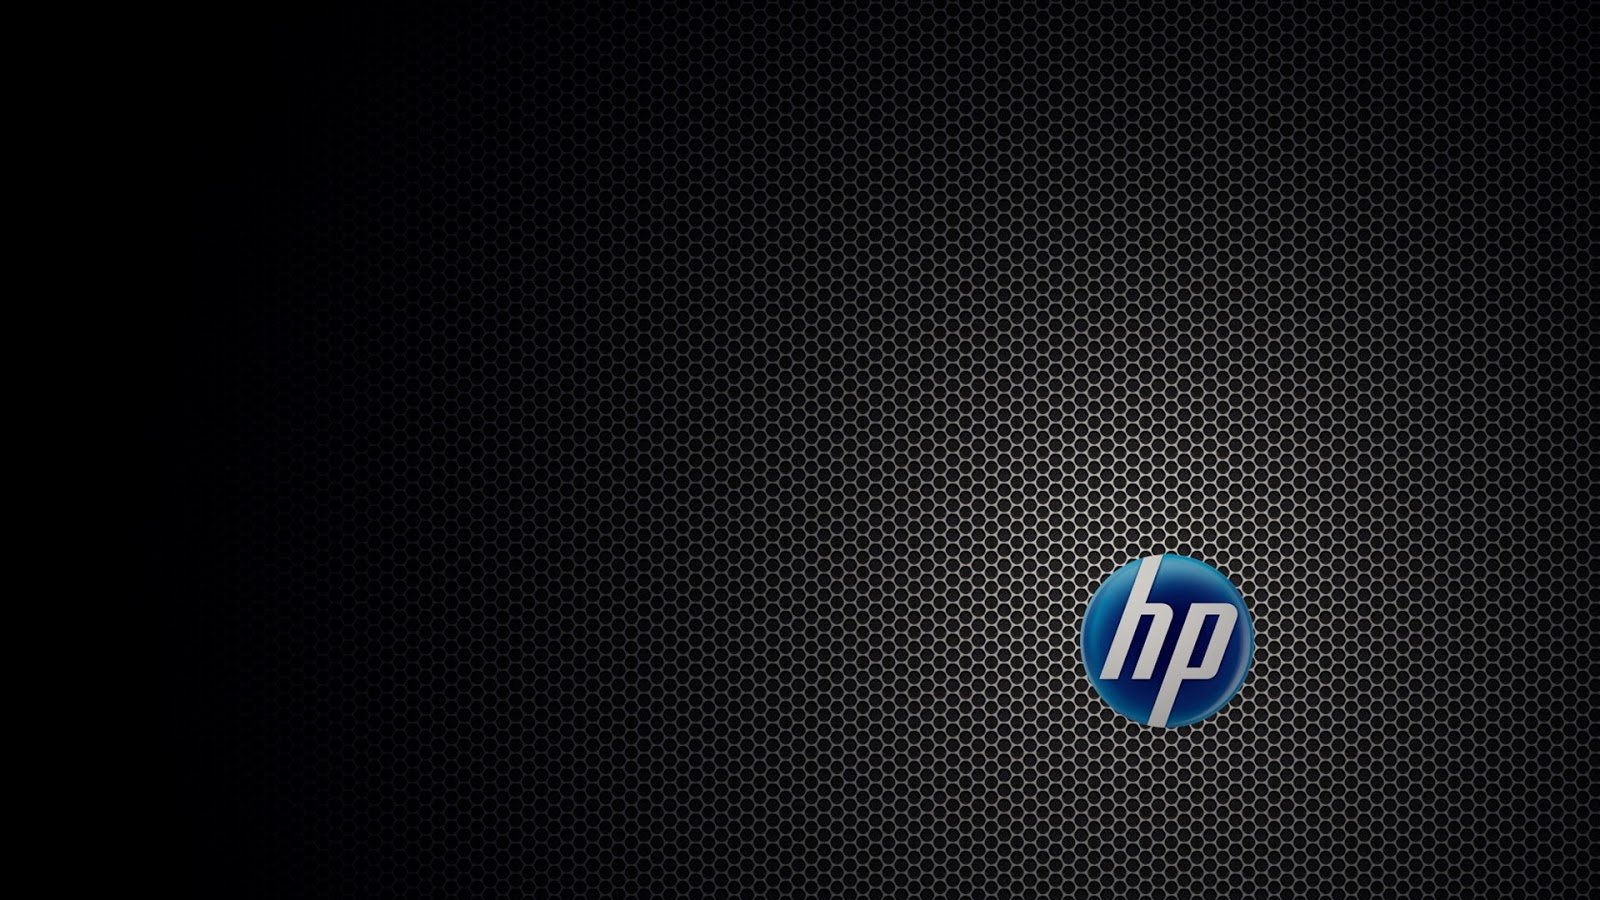 44+] HP Wallpapers HD 1080p - WallpaperSafari